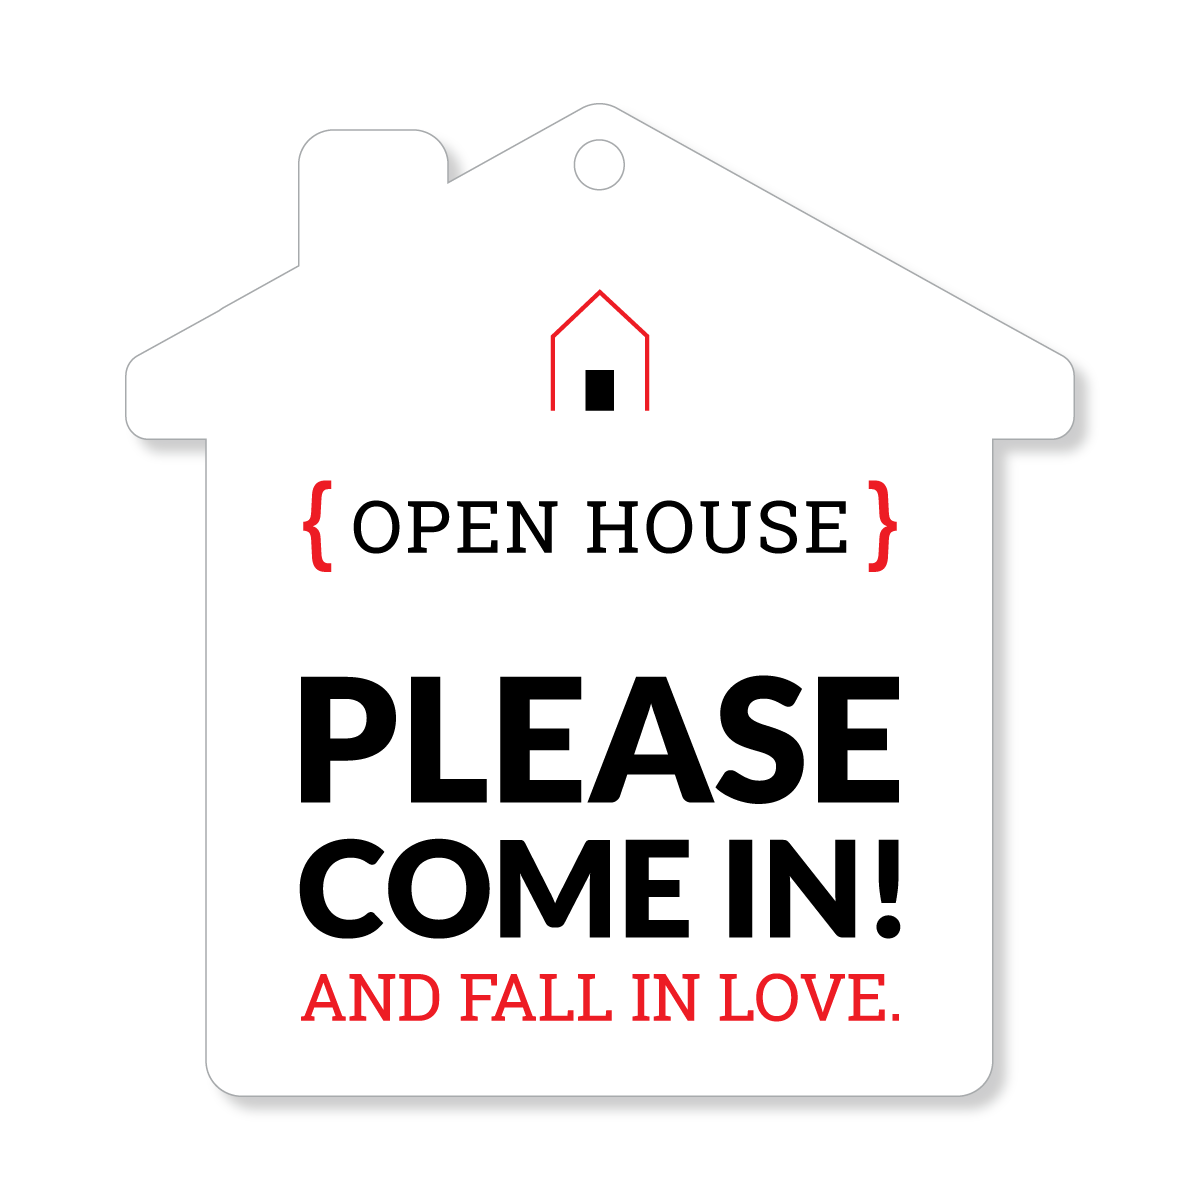 Open House Door Sign - Please come in!